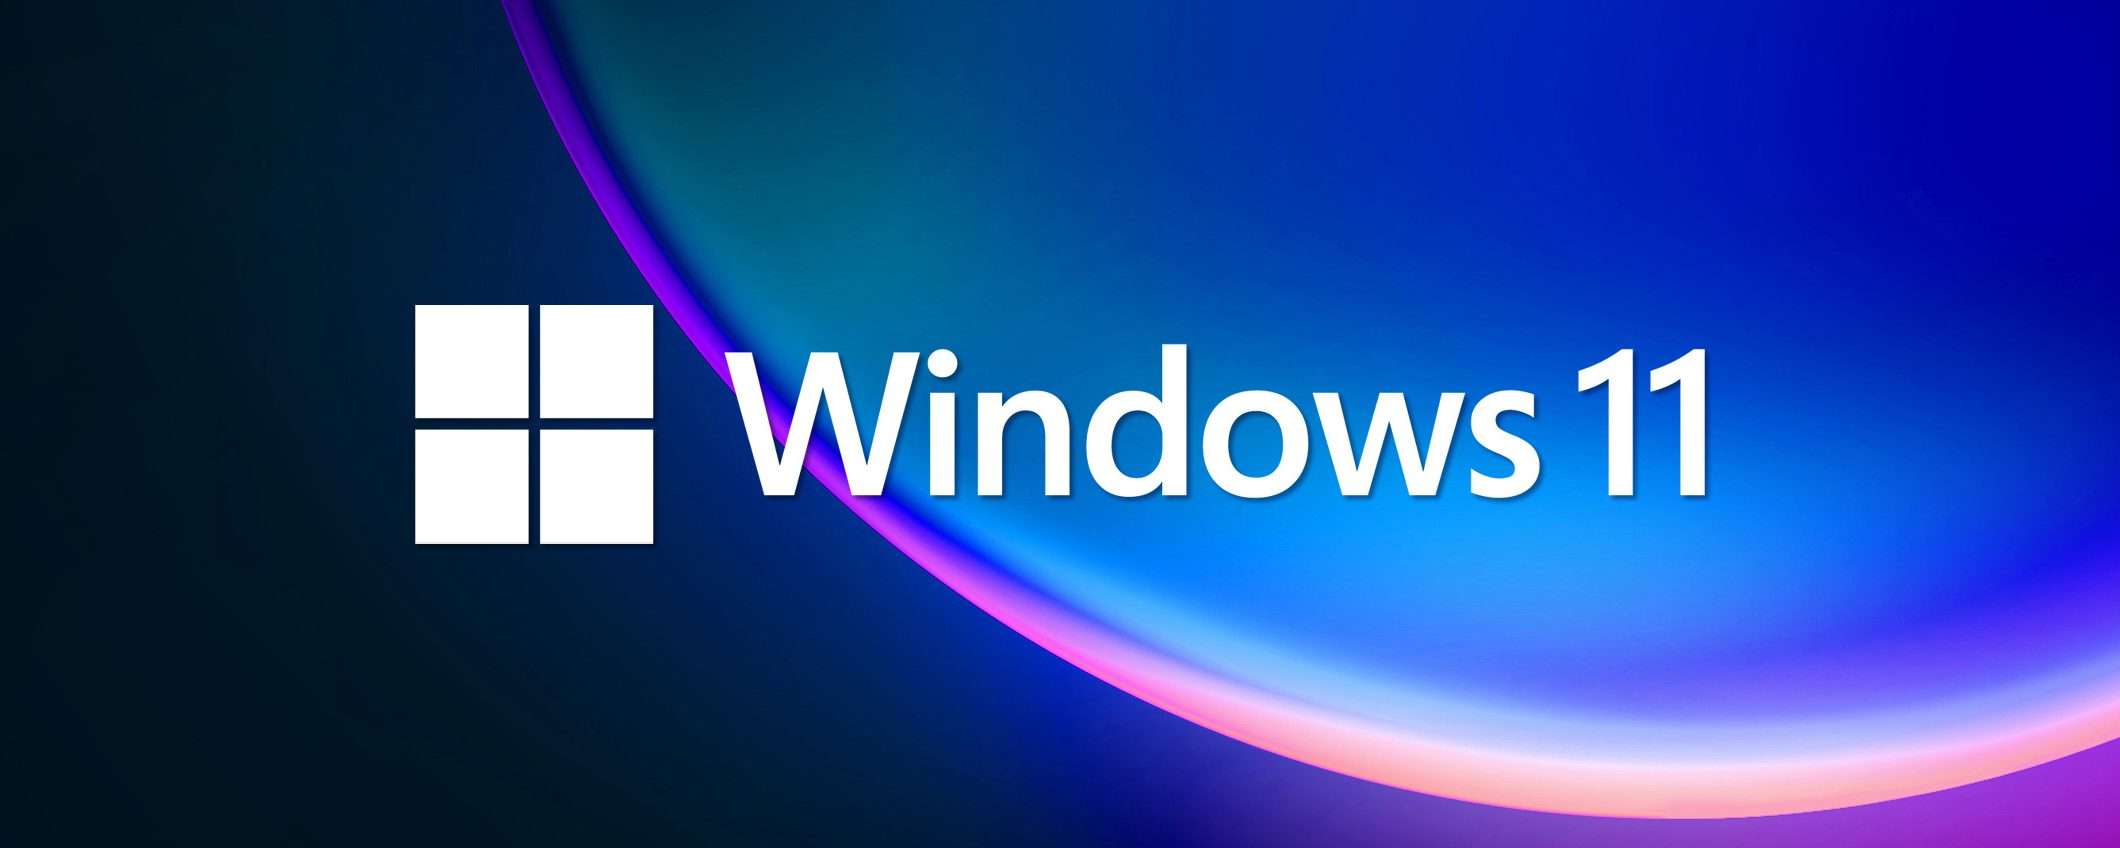 Windows 11: disponibile per l'ampia distribuzione